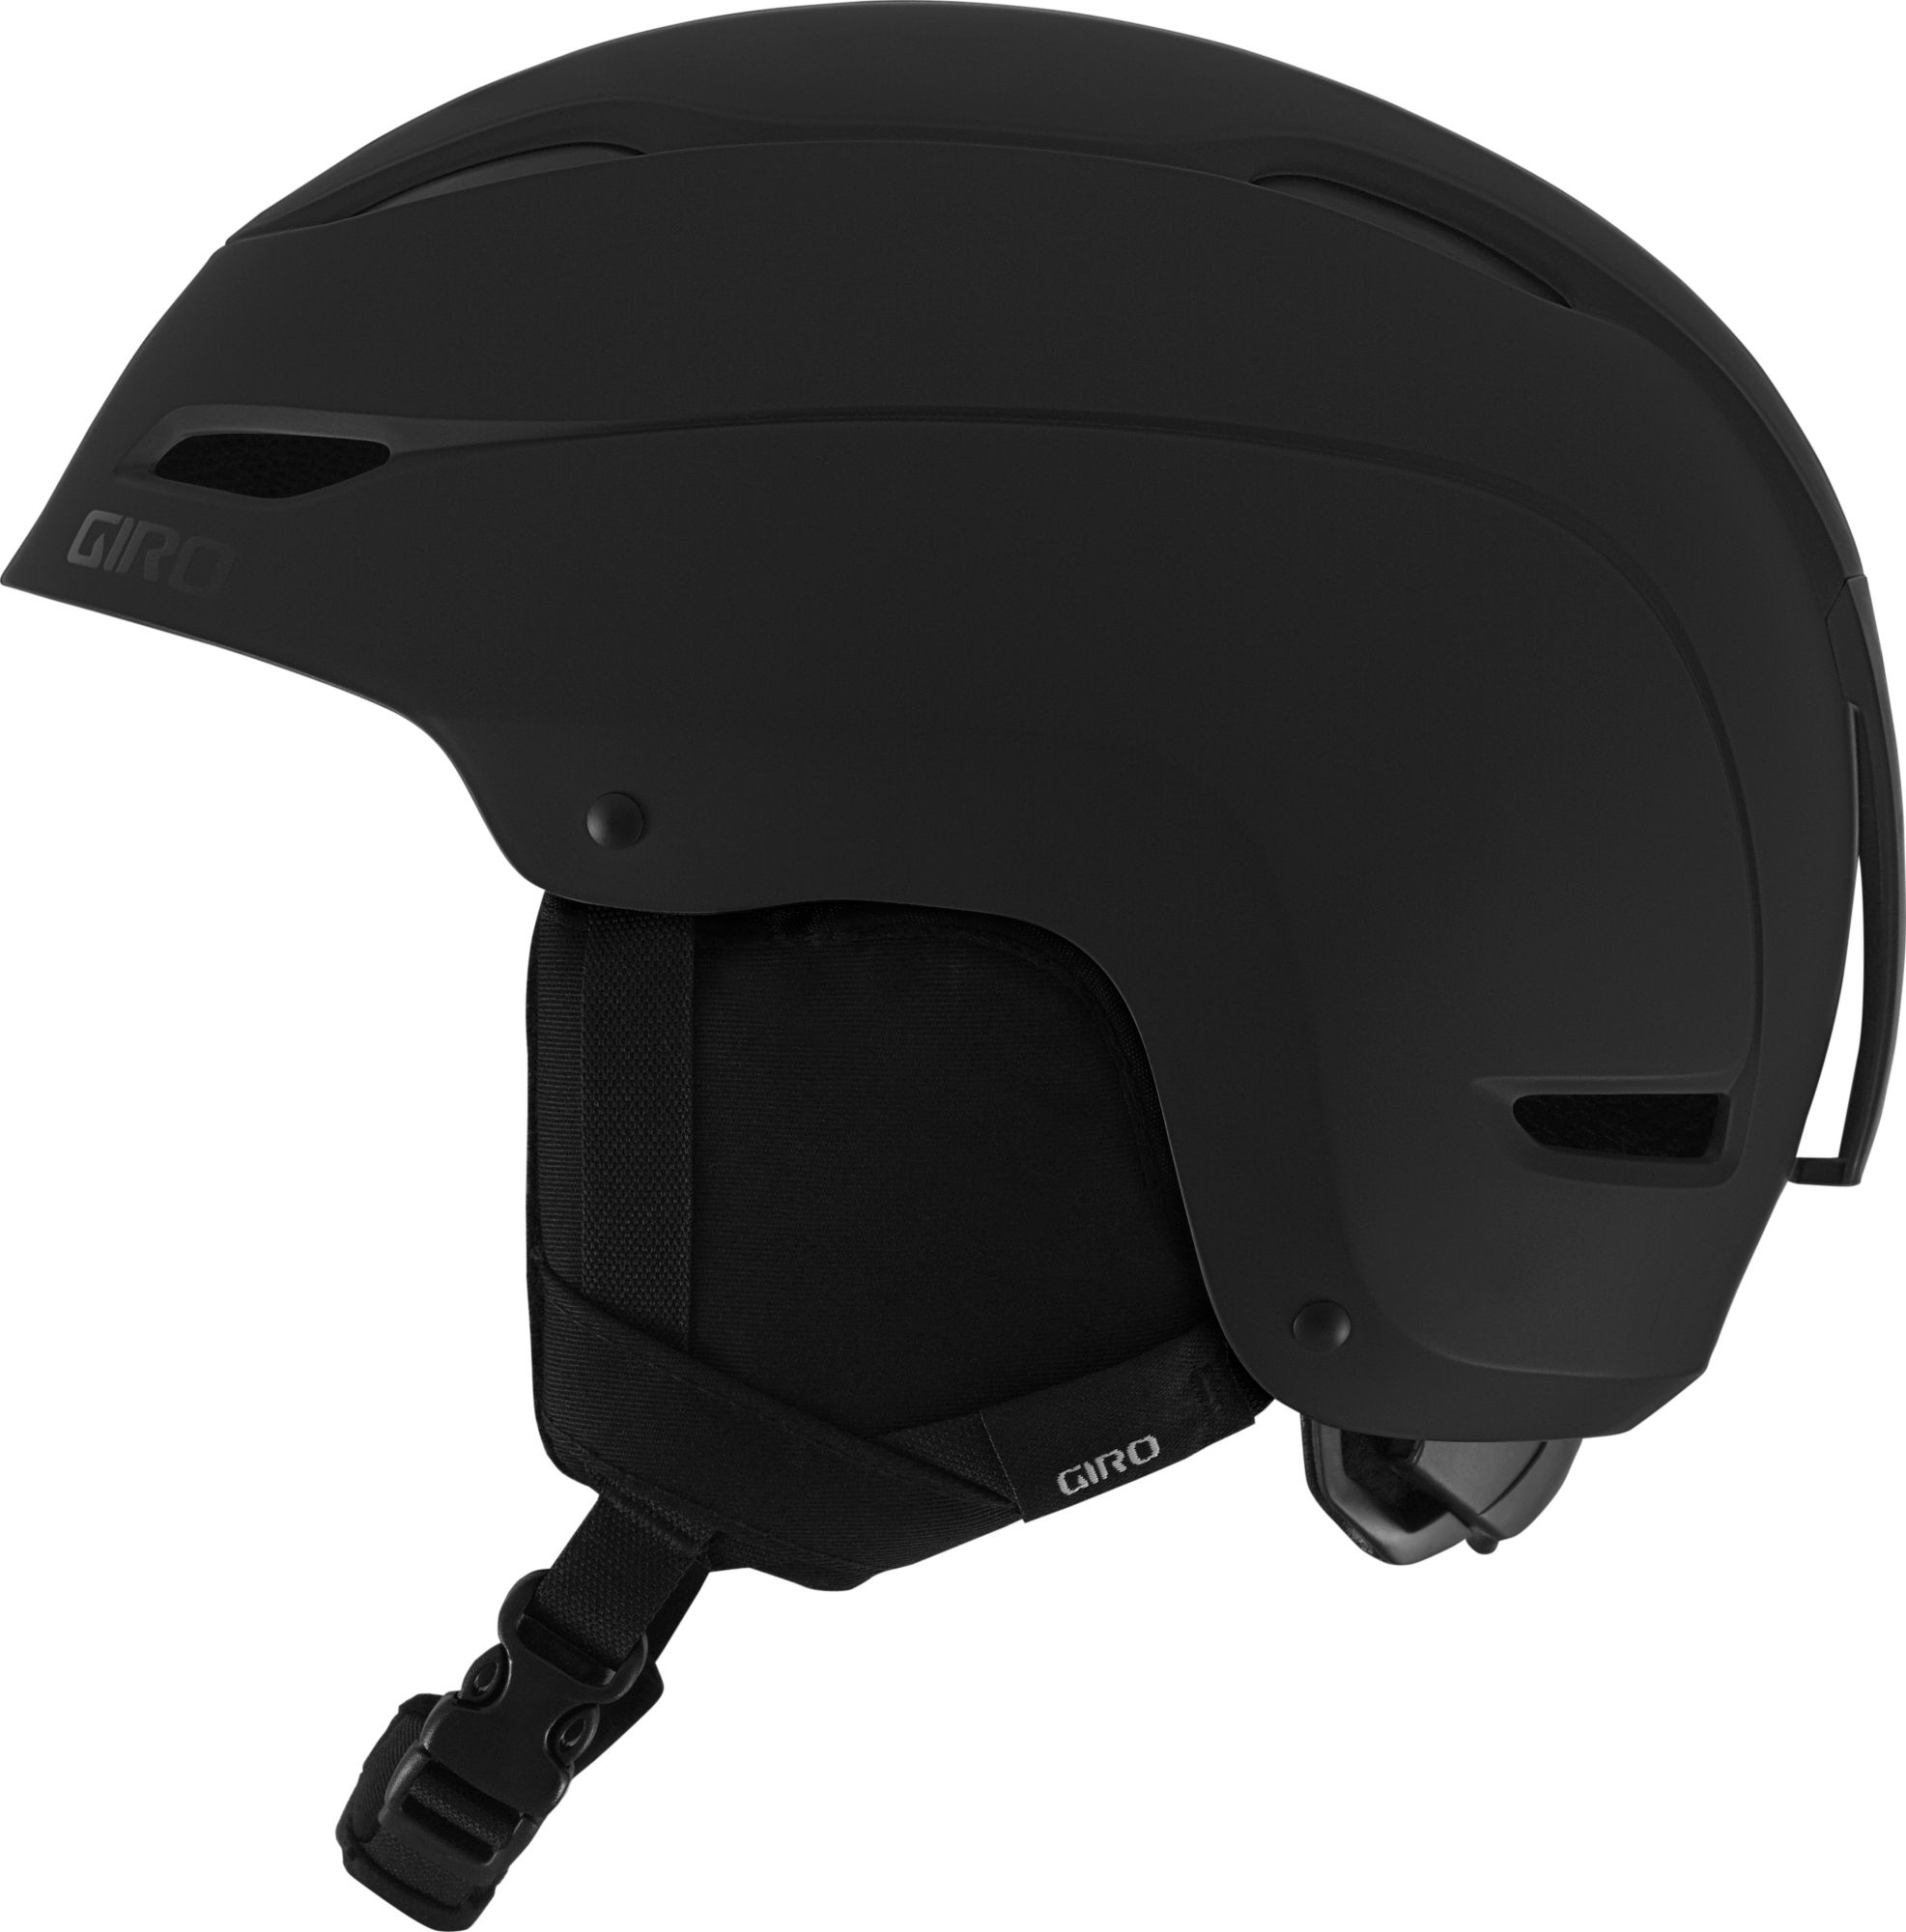 Giro Adult Ratio Snow Helmet